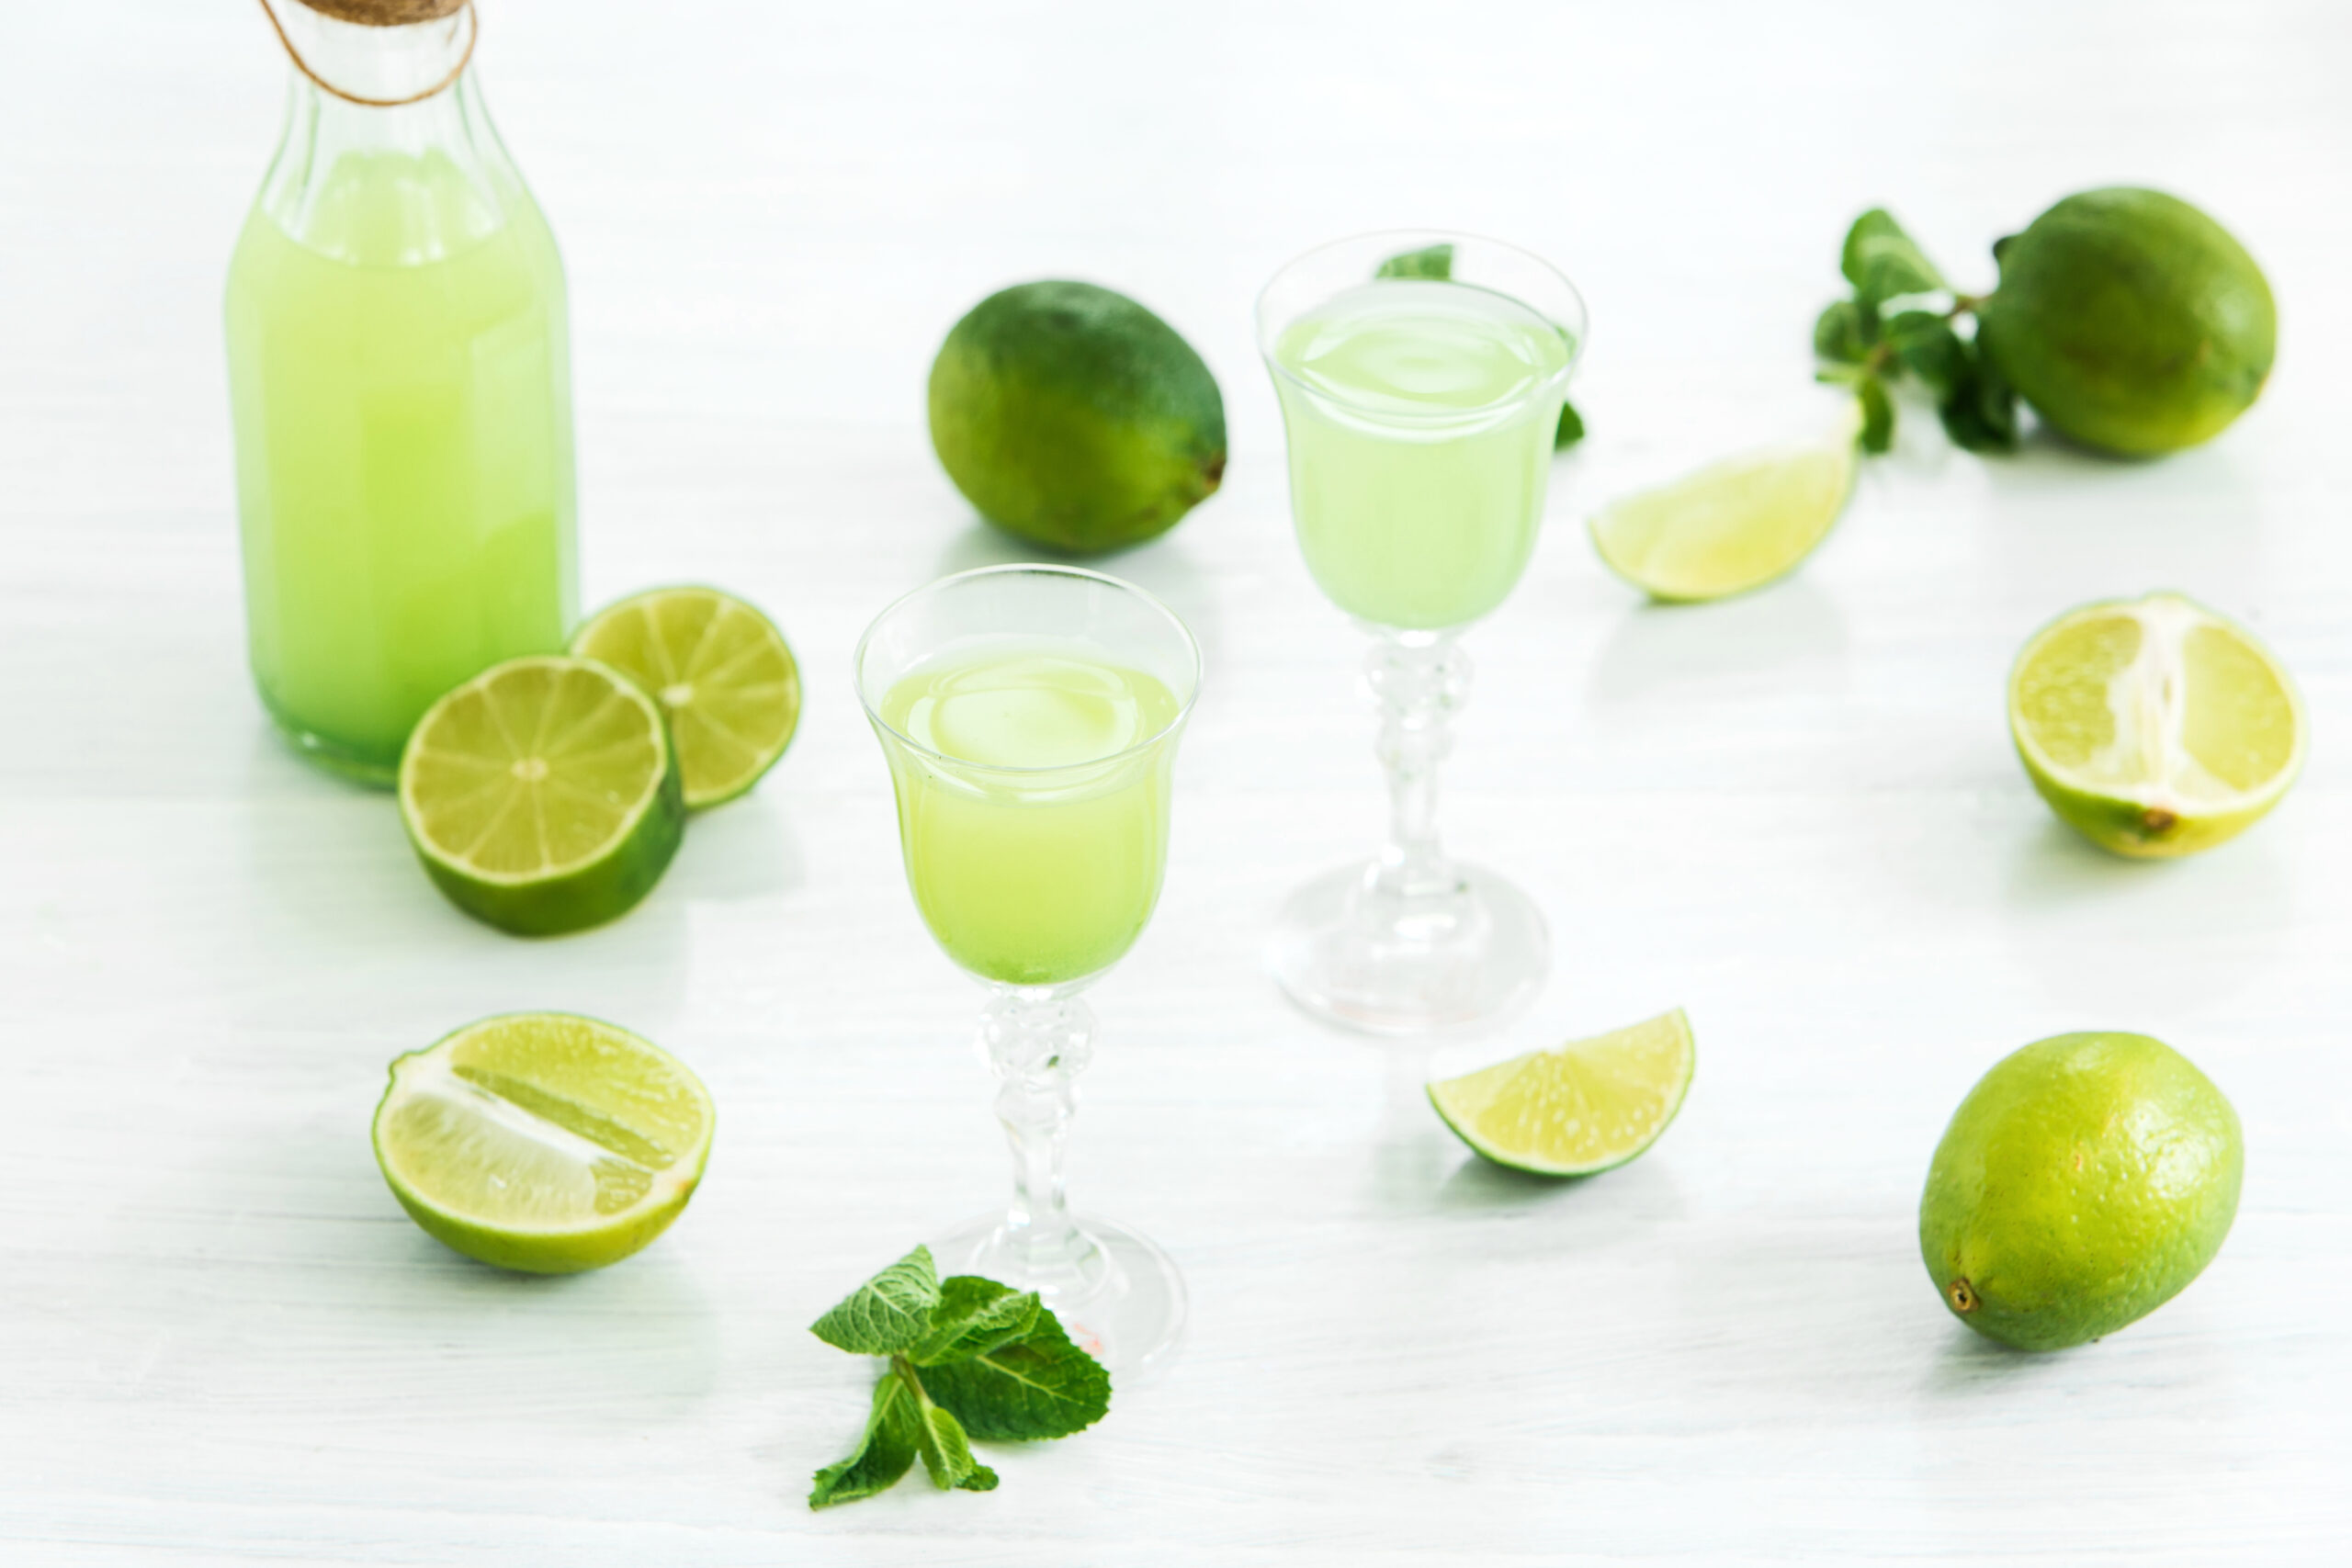 home-lime-liquor-glass-fresh-lemons-limes-white-scaled Musculação emagrece ou engorda? Melhores exercícios aeróbicos para emagrecer Perder 10kg  